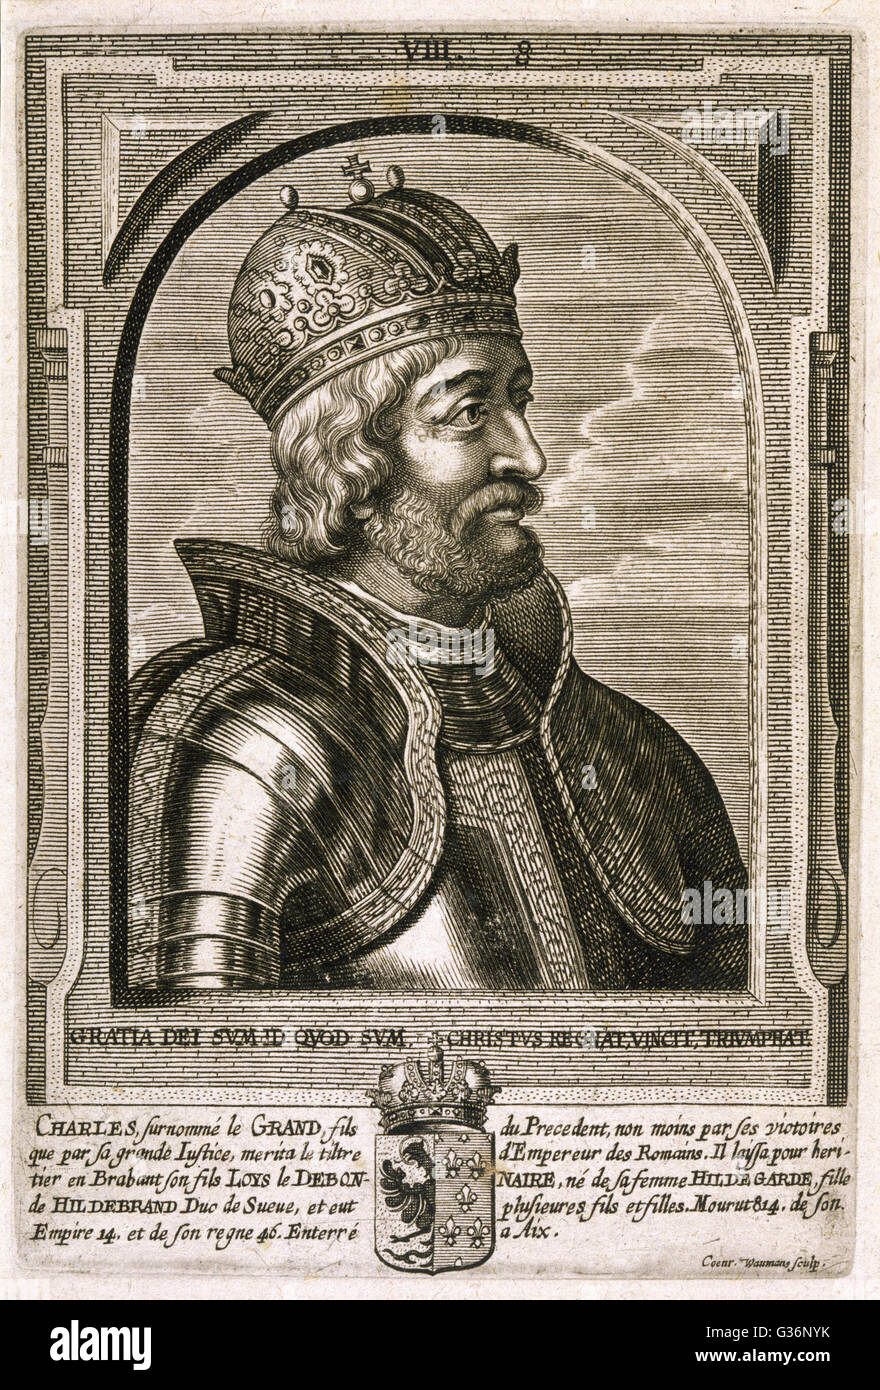 Charlemagne (Carolus Magnus. Programme Karolus Magnus, Charles le Grand), Roi des Francs à partir de 768, roi des Lombards de 774, et l'Empereur des Romains à partir de 800. Date : 742 - 814 Banque D'Images